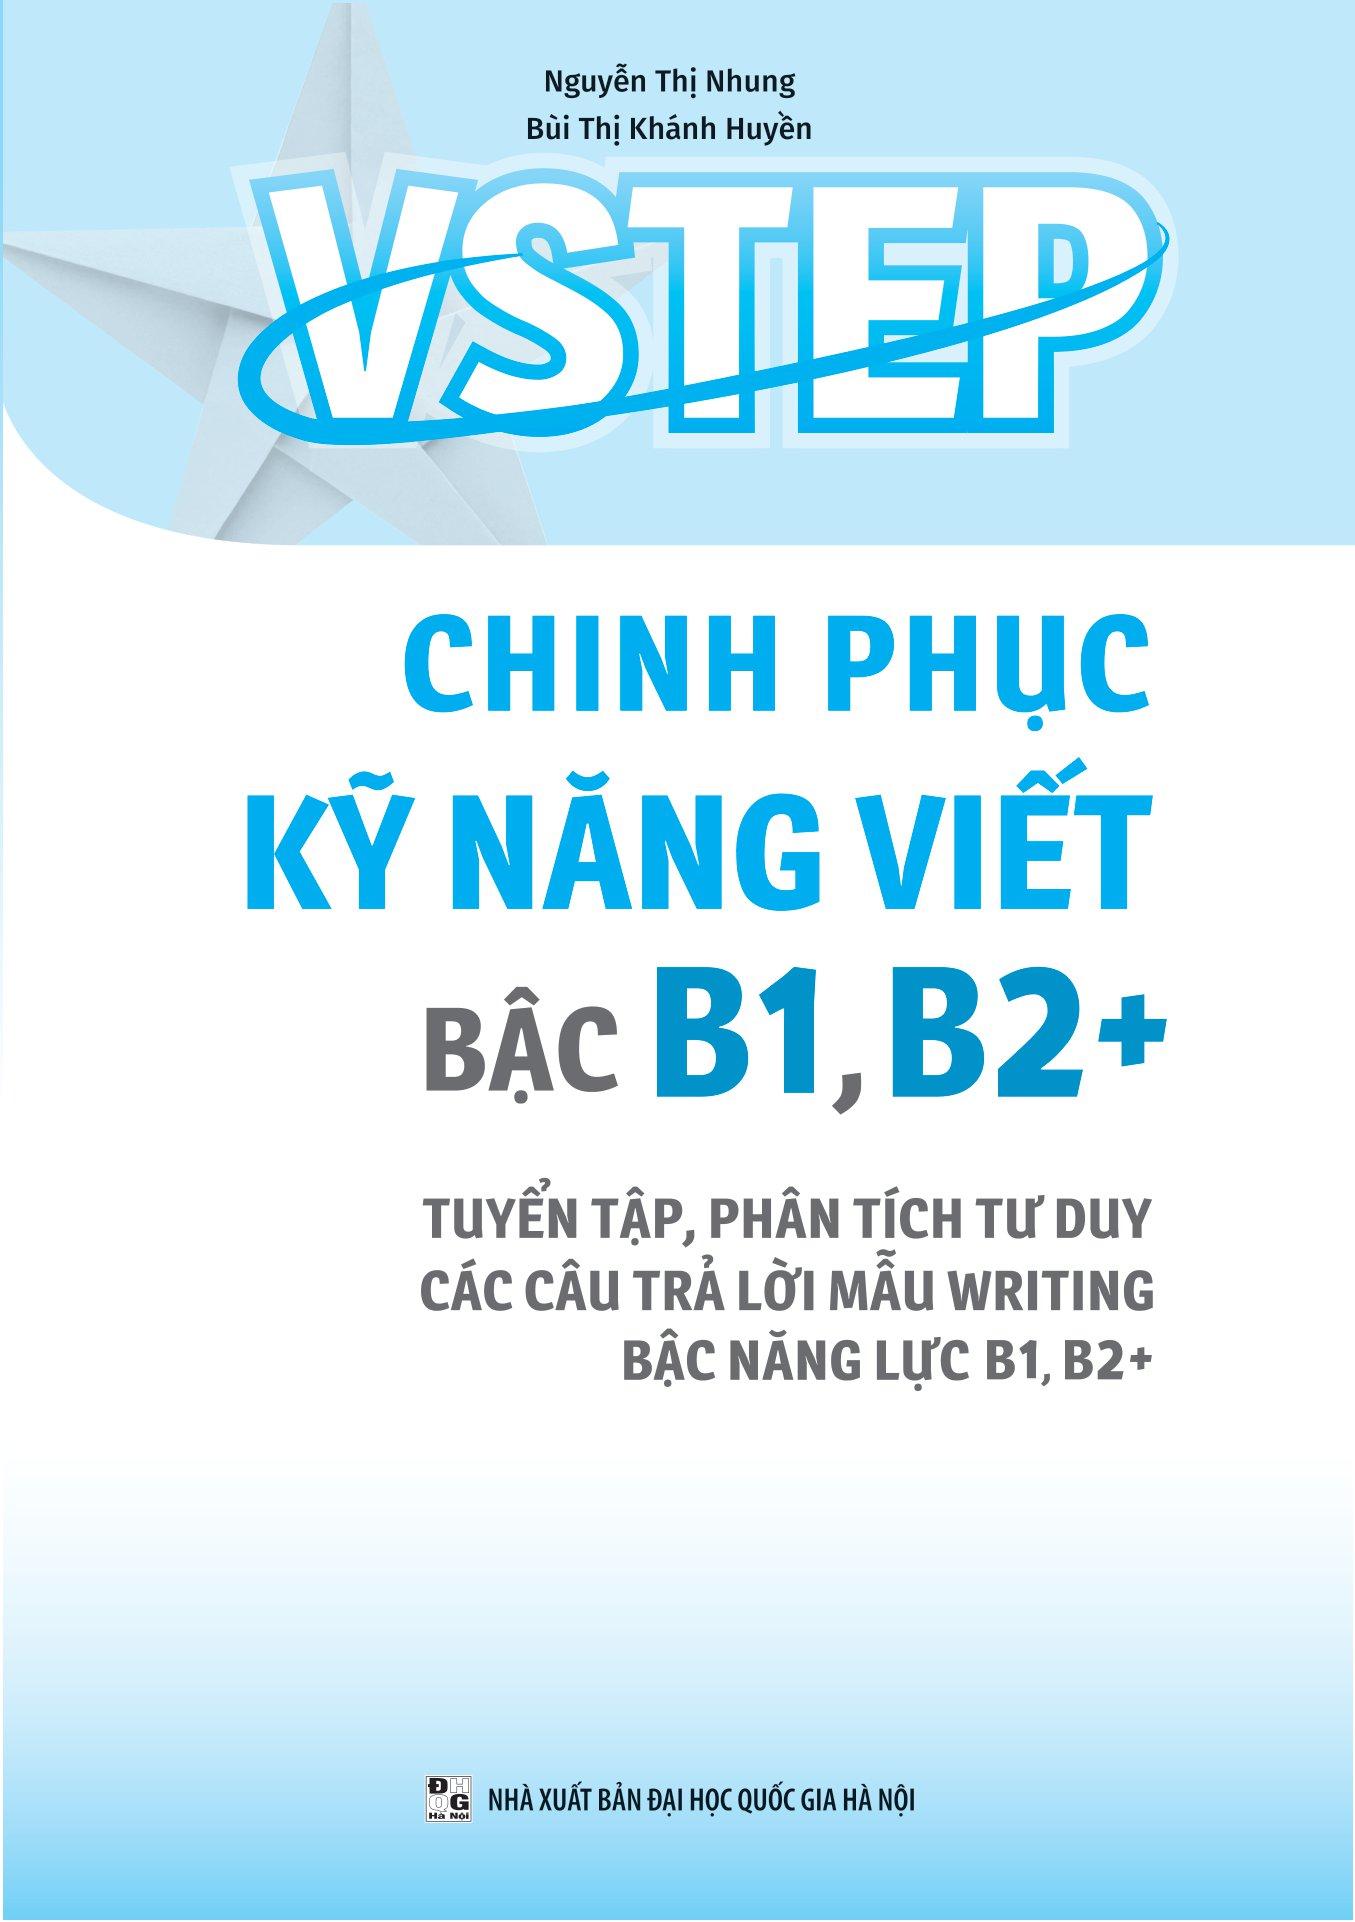 VSTEP - Chinh Phục Kỹ Năng Viết Bậc B1, B2+